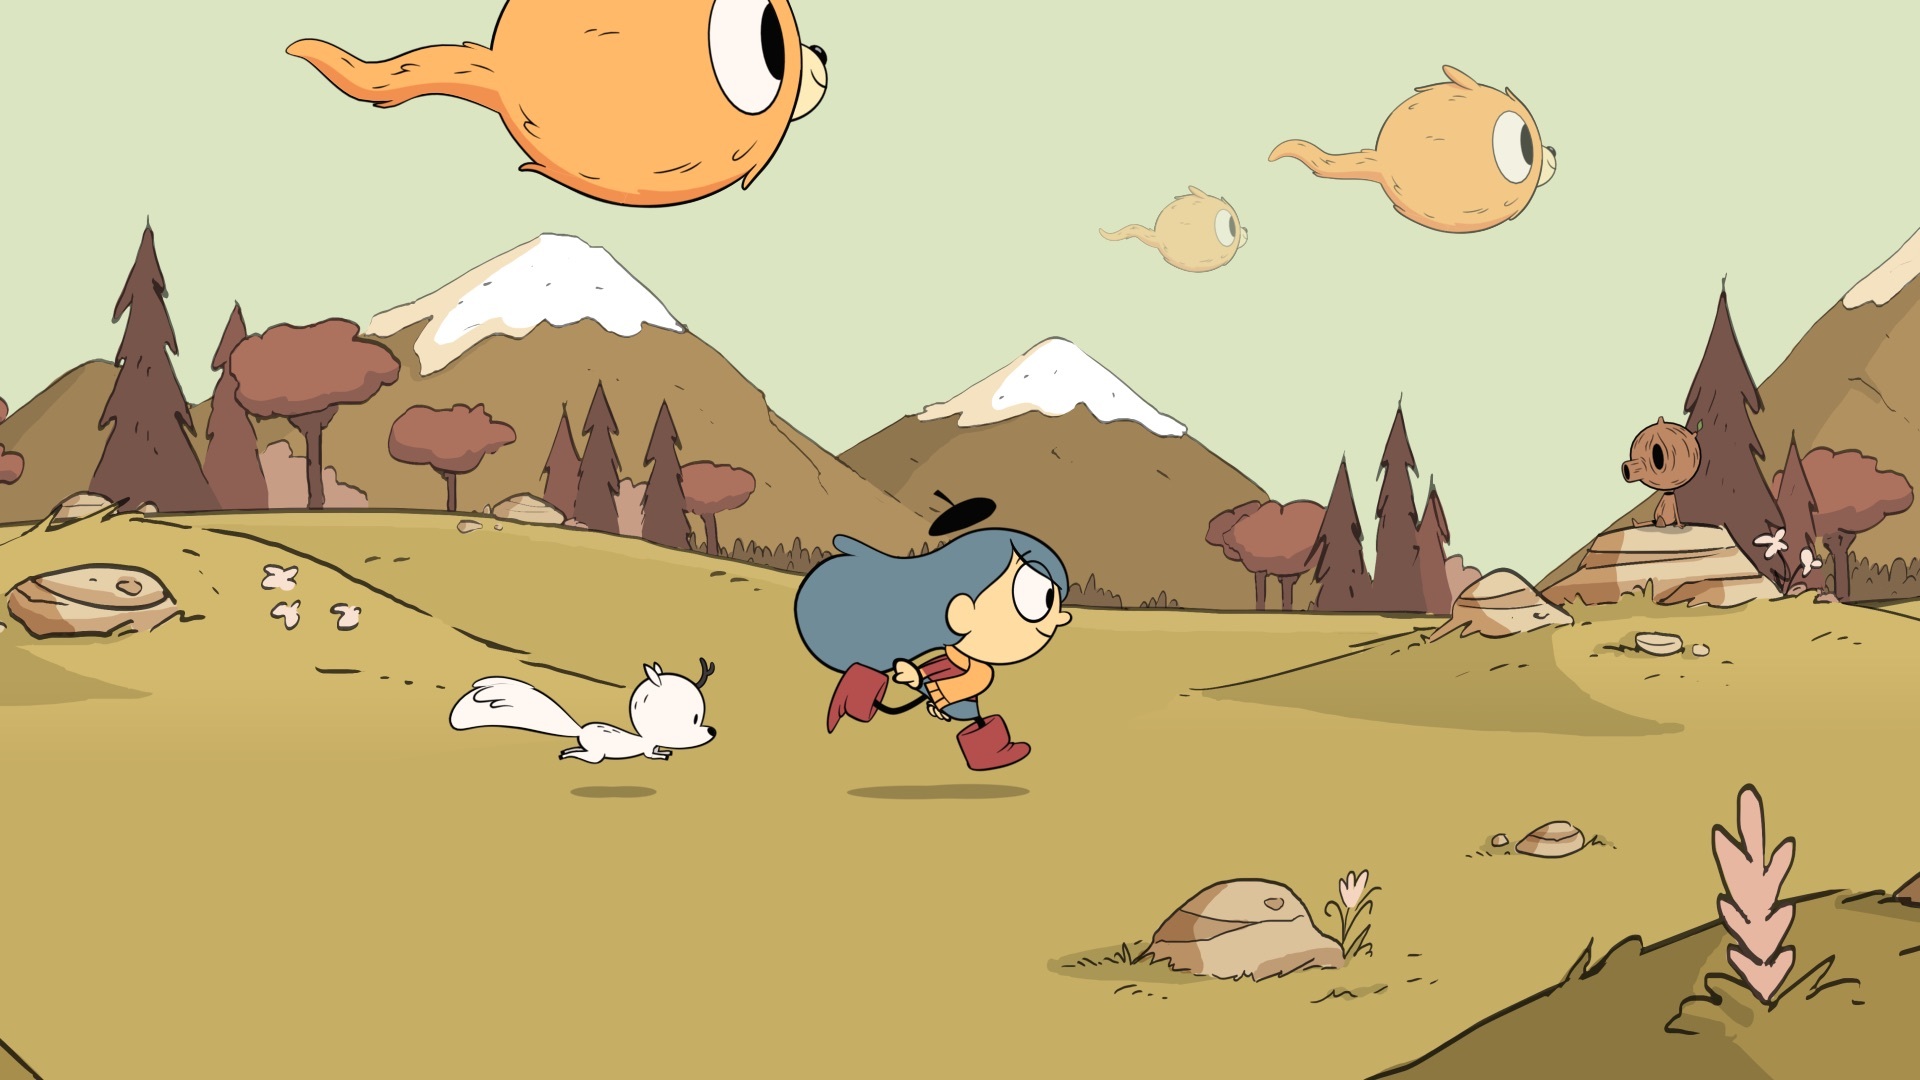 Hilda rennt mit ihrem lieben Fuchs Twig durch ein Feld, während Woffs in einer Episode von Hilda durch den Himmel fliegen